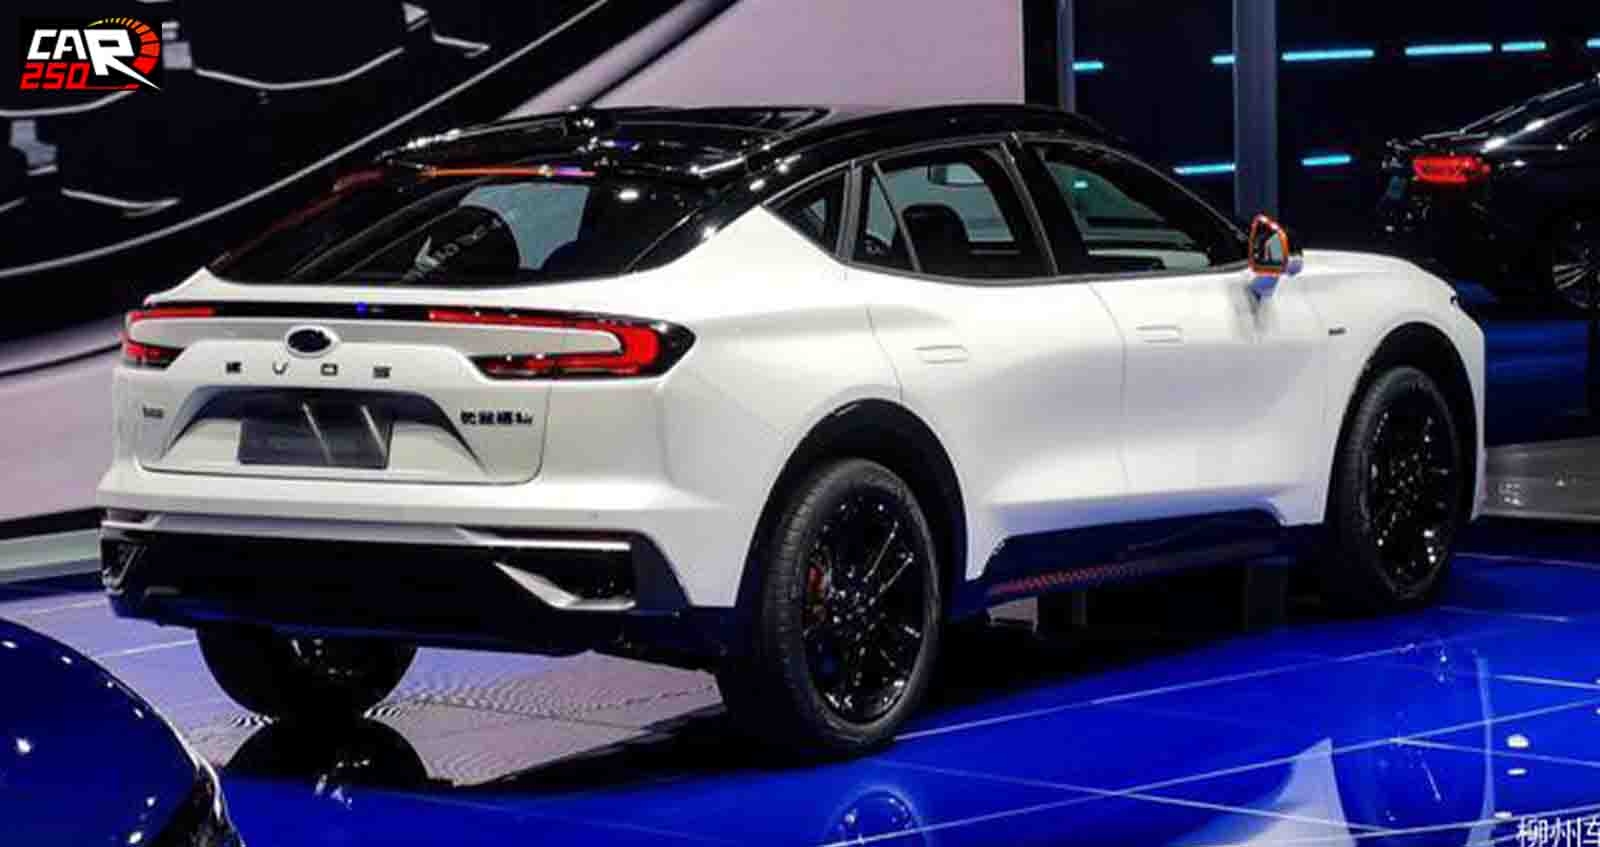 ภาพคันจริง Ford Evos SUV Coupe ตัวใหม่ ในจีน